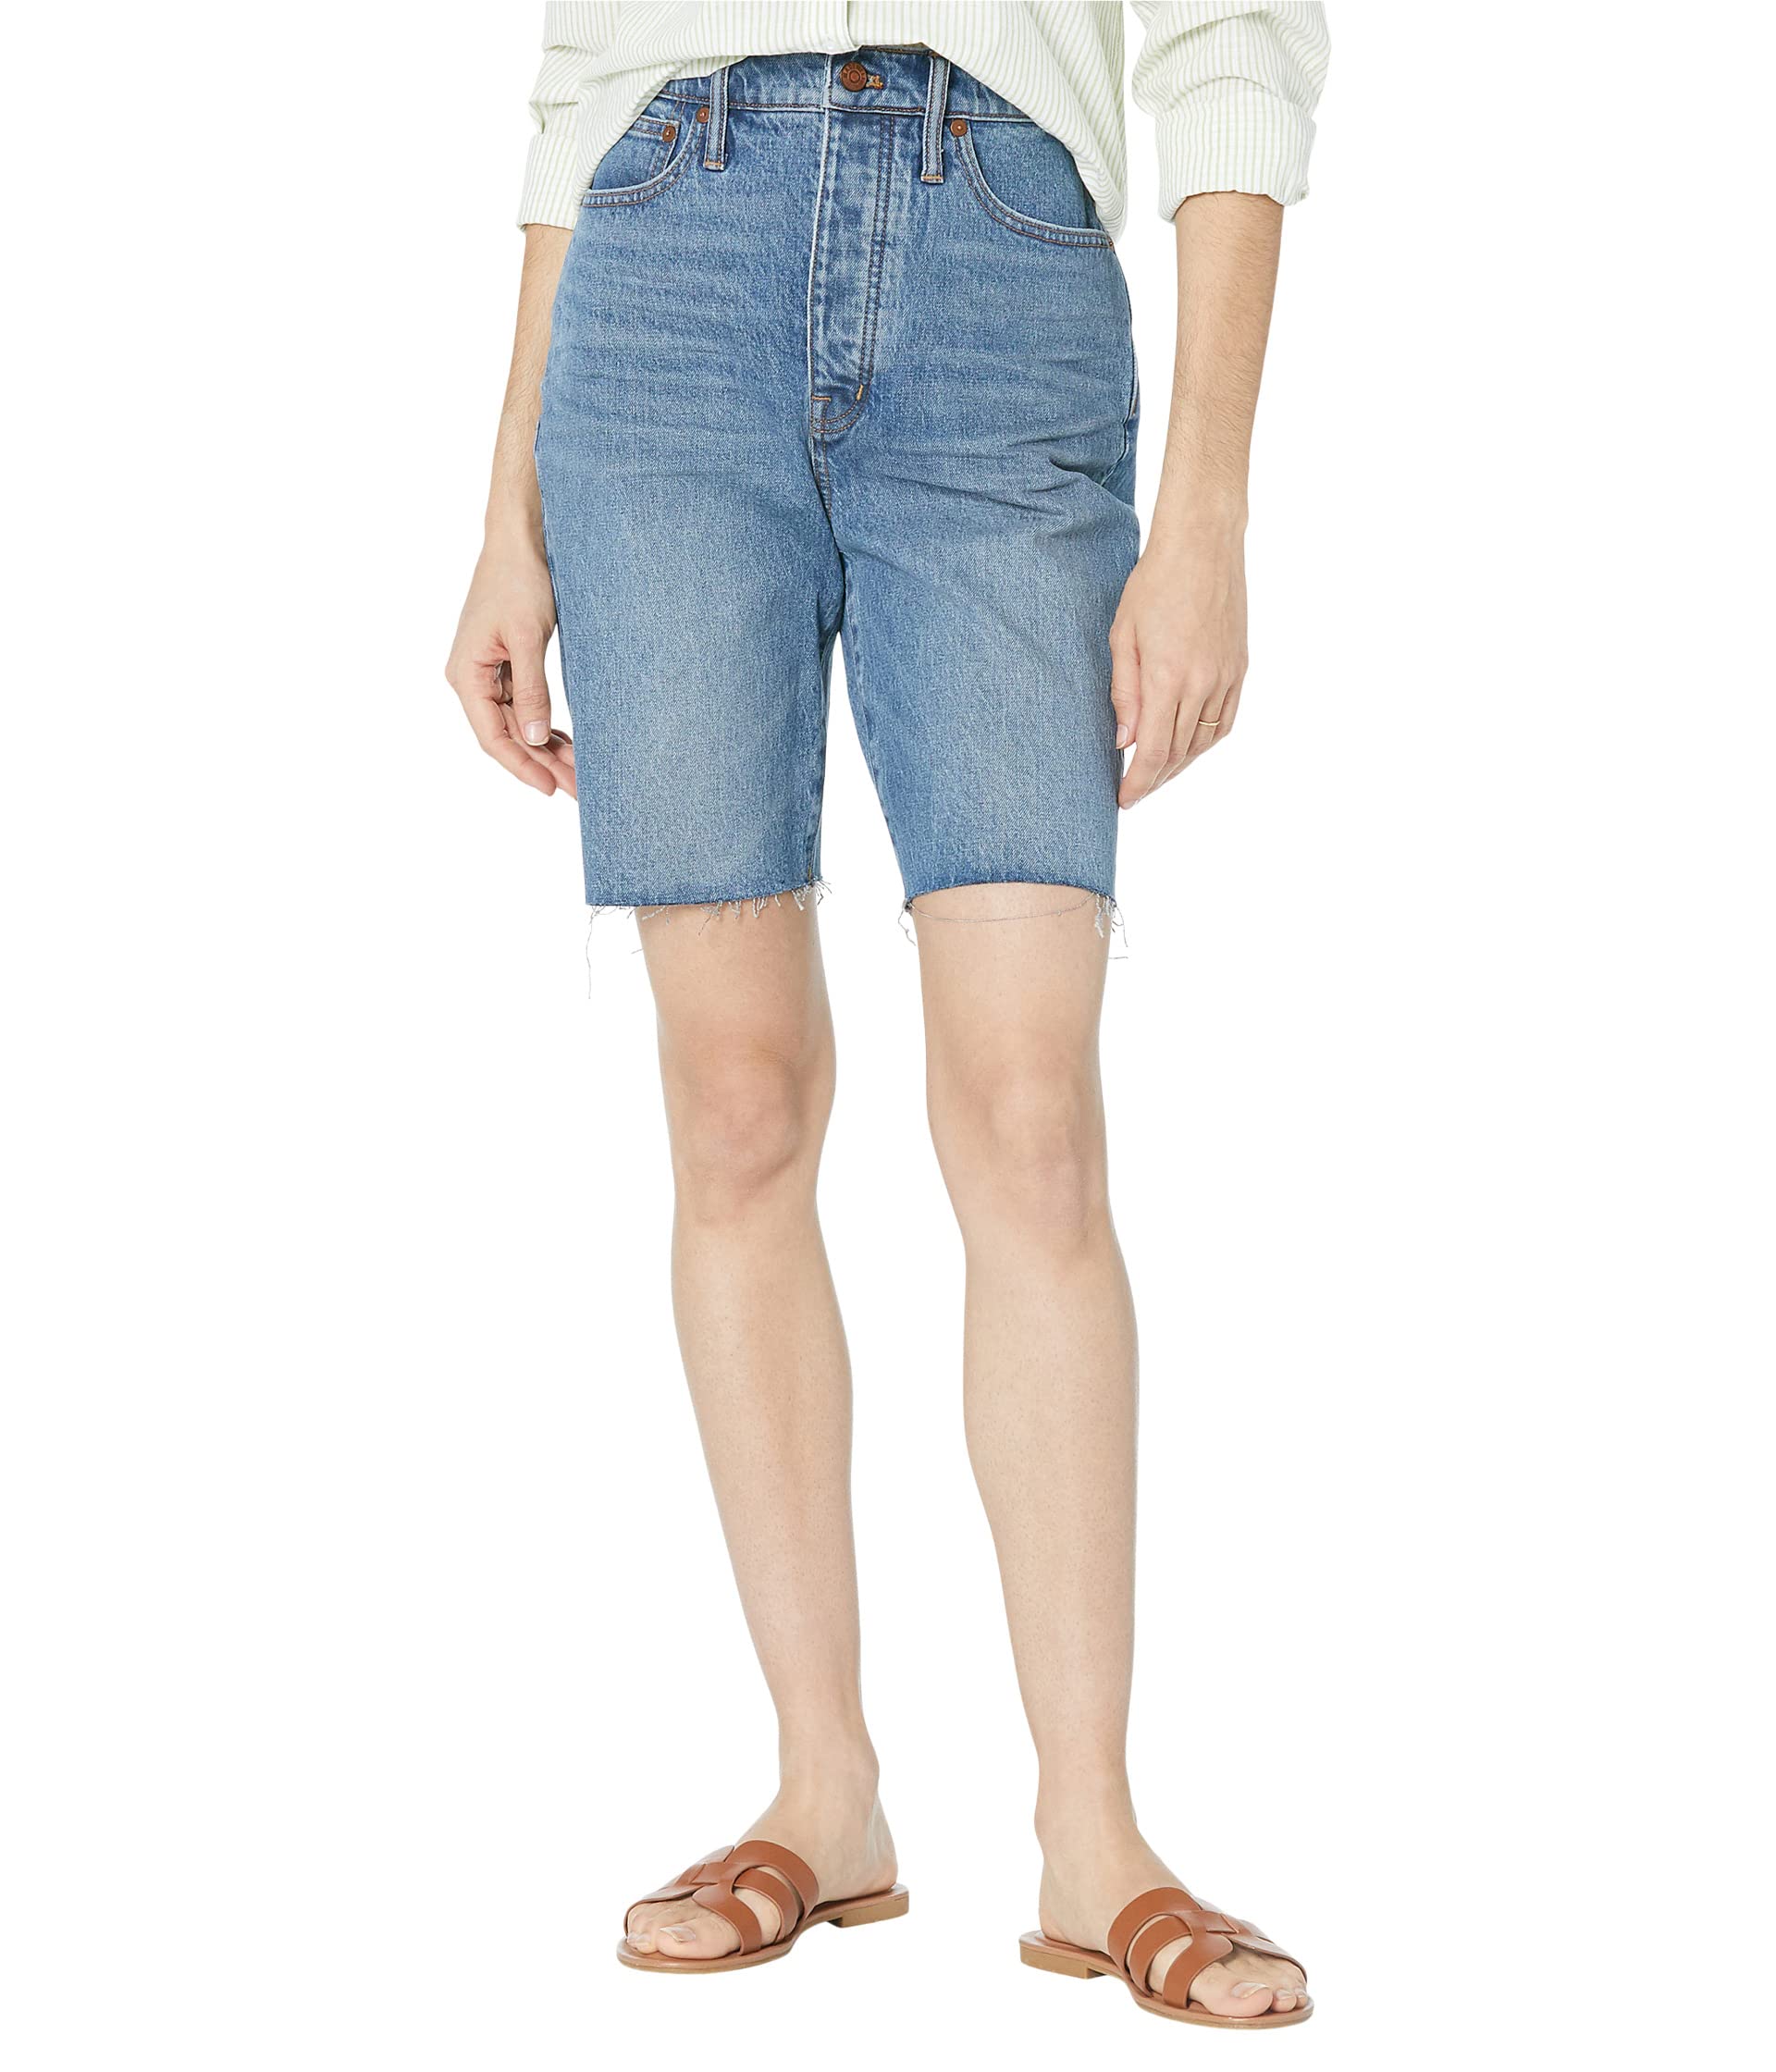 Шорты Madewell, High-Rise Long Denim Shorts in Brightwood Wash шорты madewell relaxed denim shorts in haywood wash